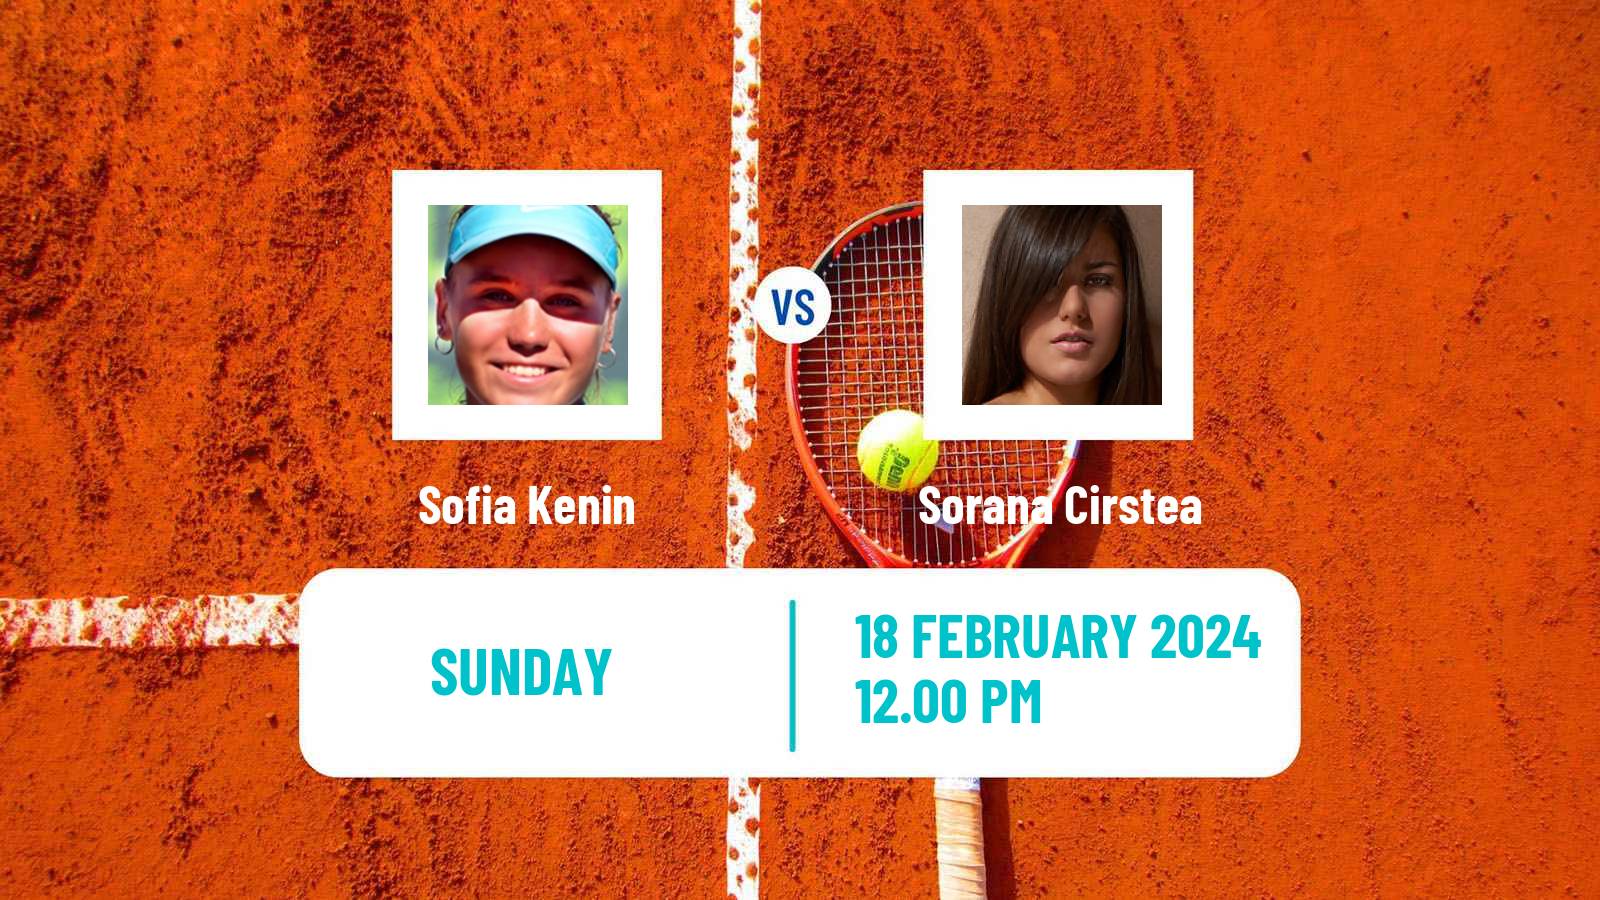 Tennis WTA Dubai Sofia Kenin - Sorana Cirstea